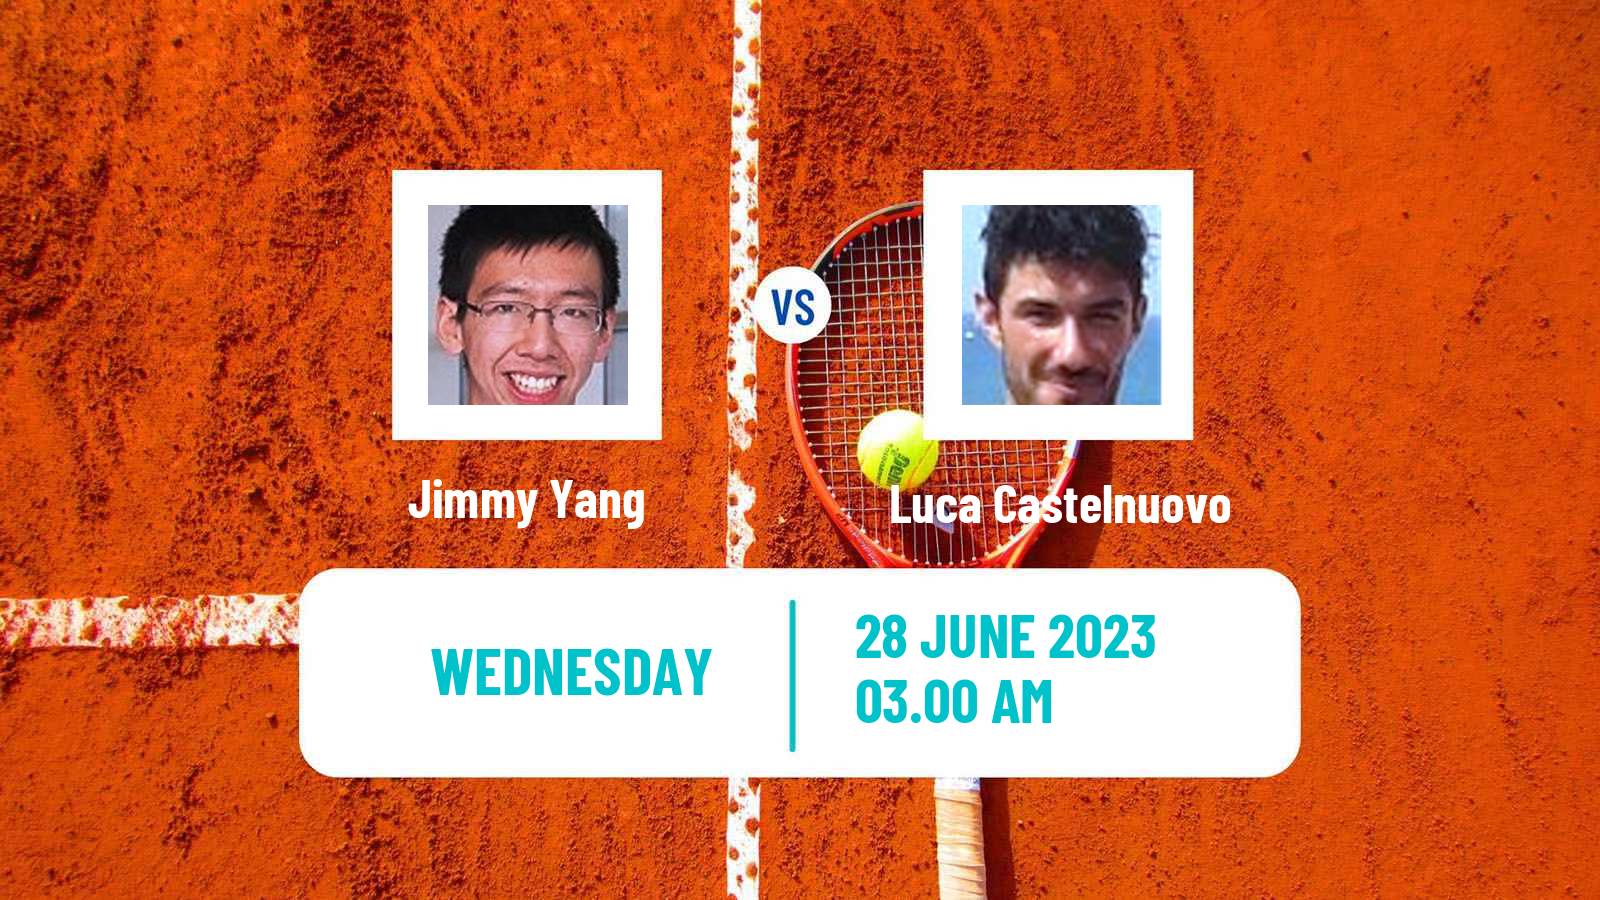 Tennis ITF M15 Tianjin 3 Men Jimmy Yang - Luca Castelnuovo